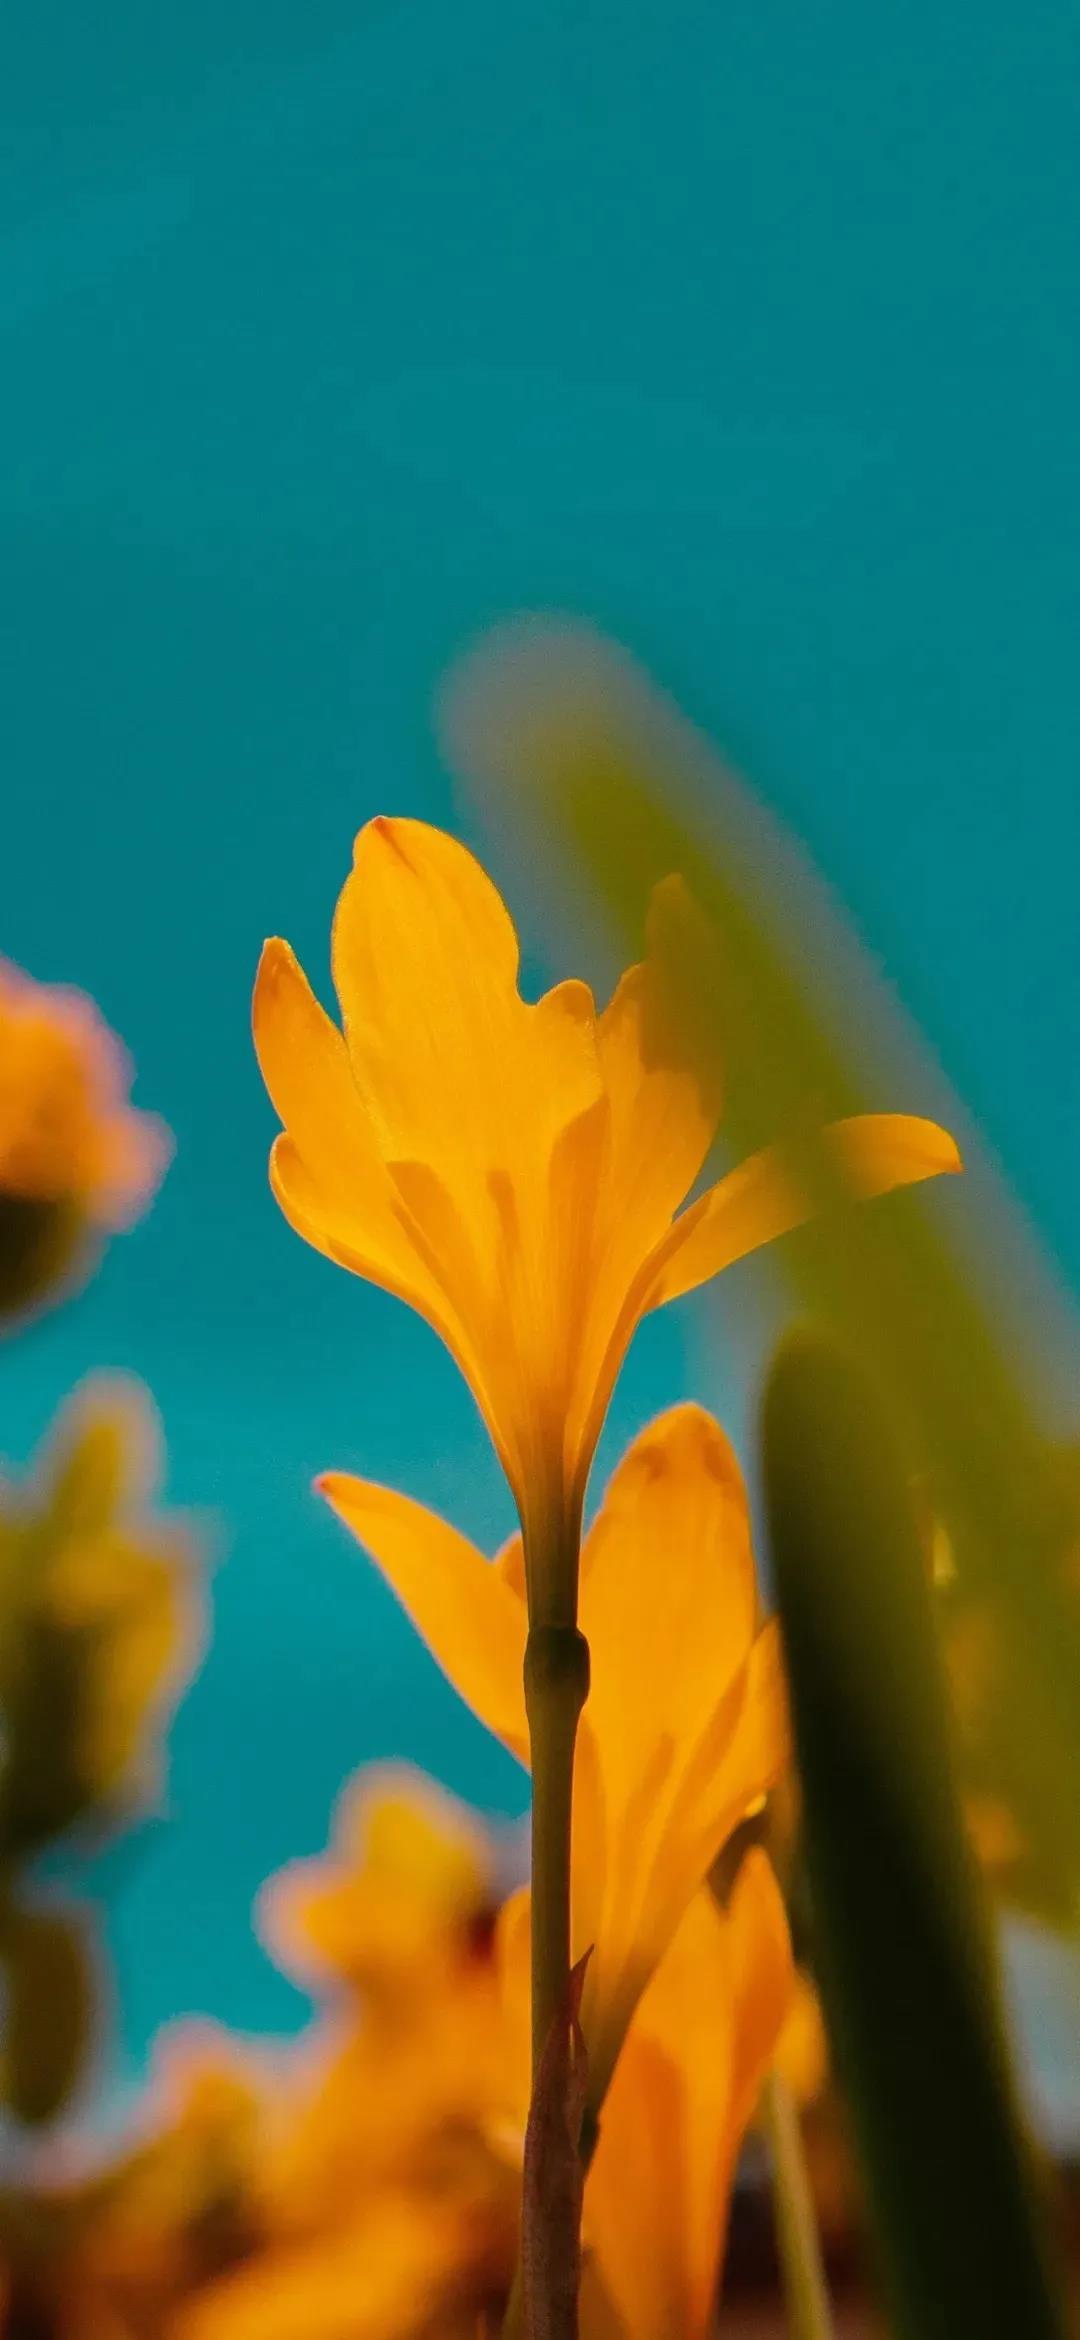 每天都有好心情黄色花朵唯美高清手机壁纸图片